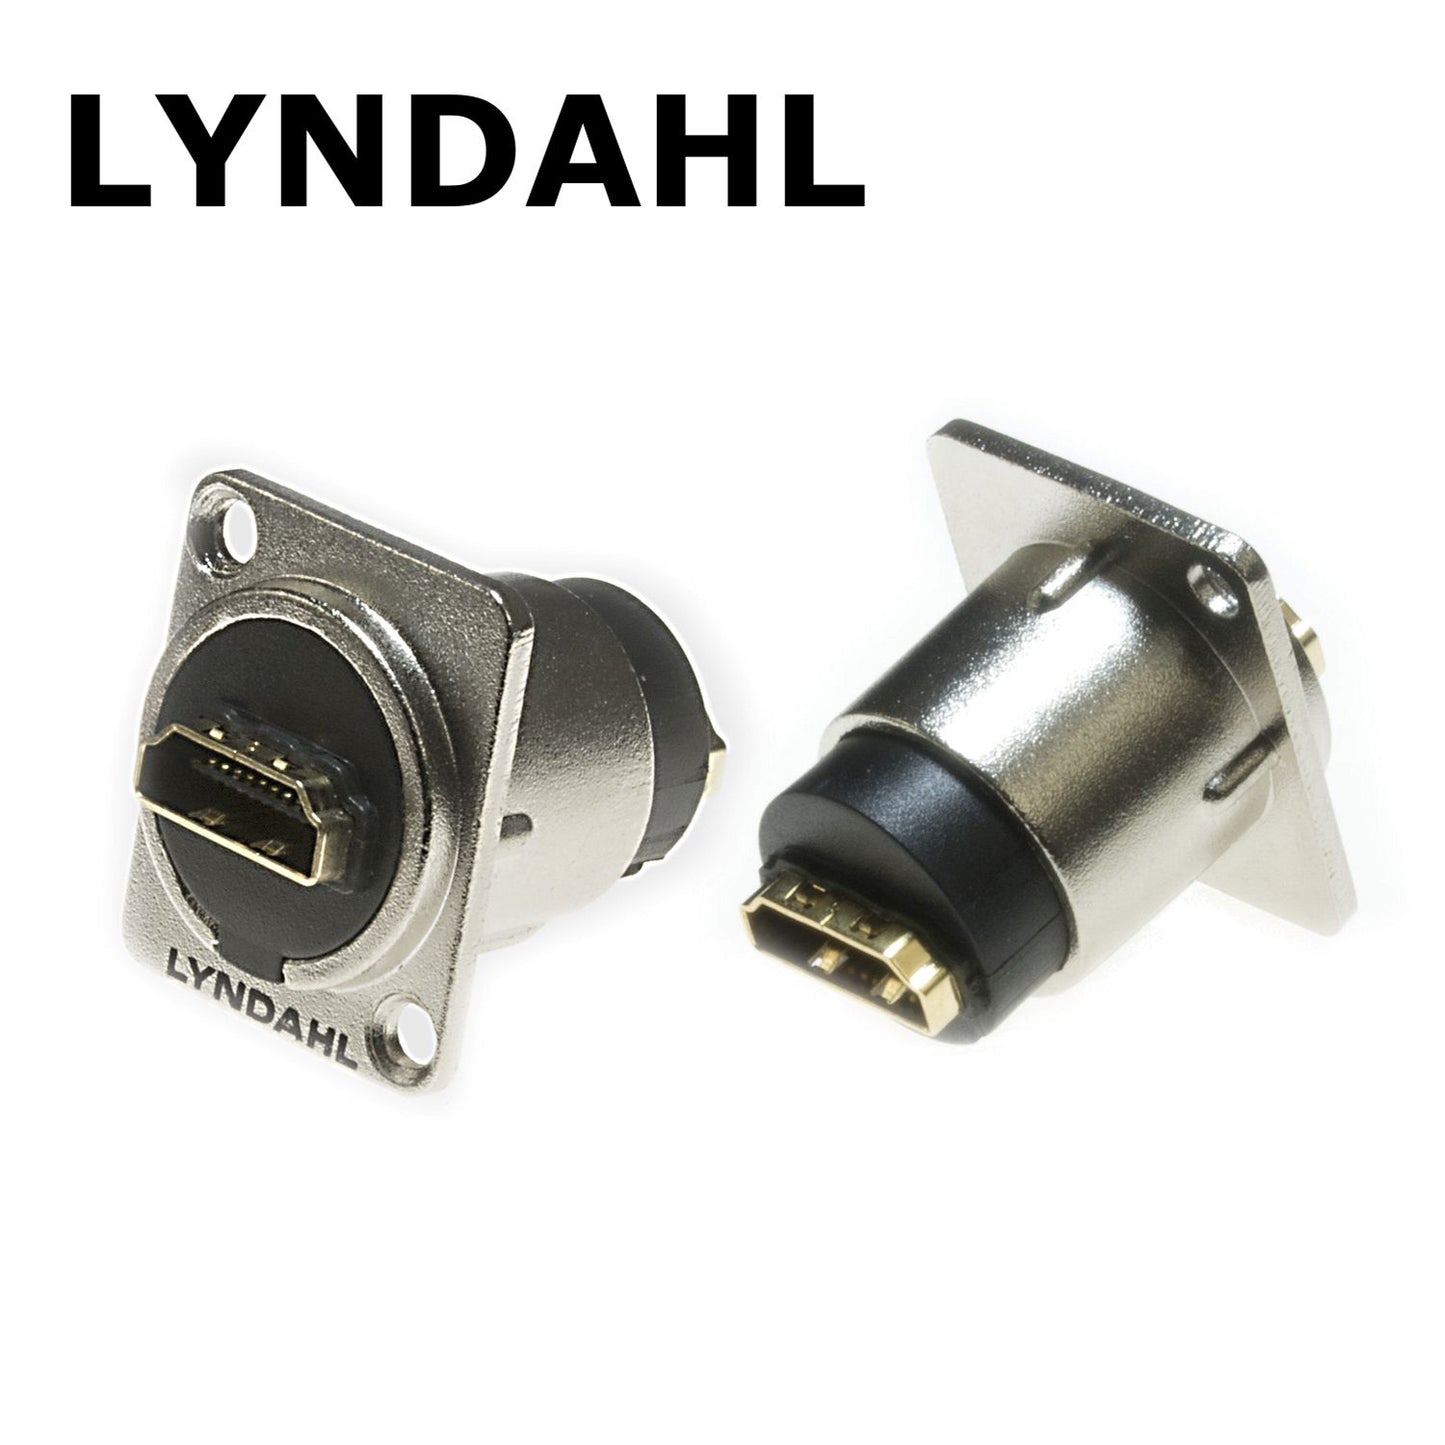 Prise à bride intégrée Lyndahl HDMI 1.4, LKHA0020, prise traversante haut de gamme